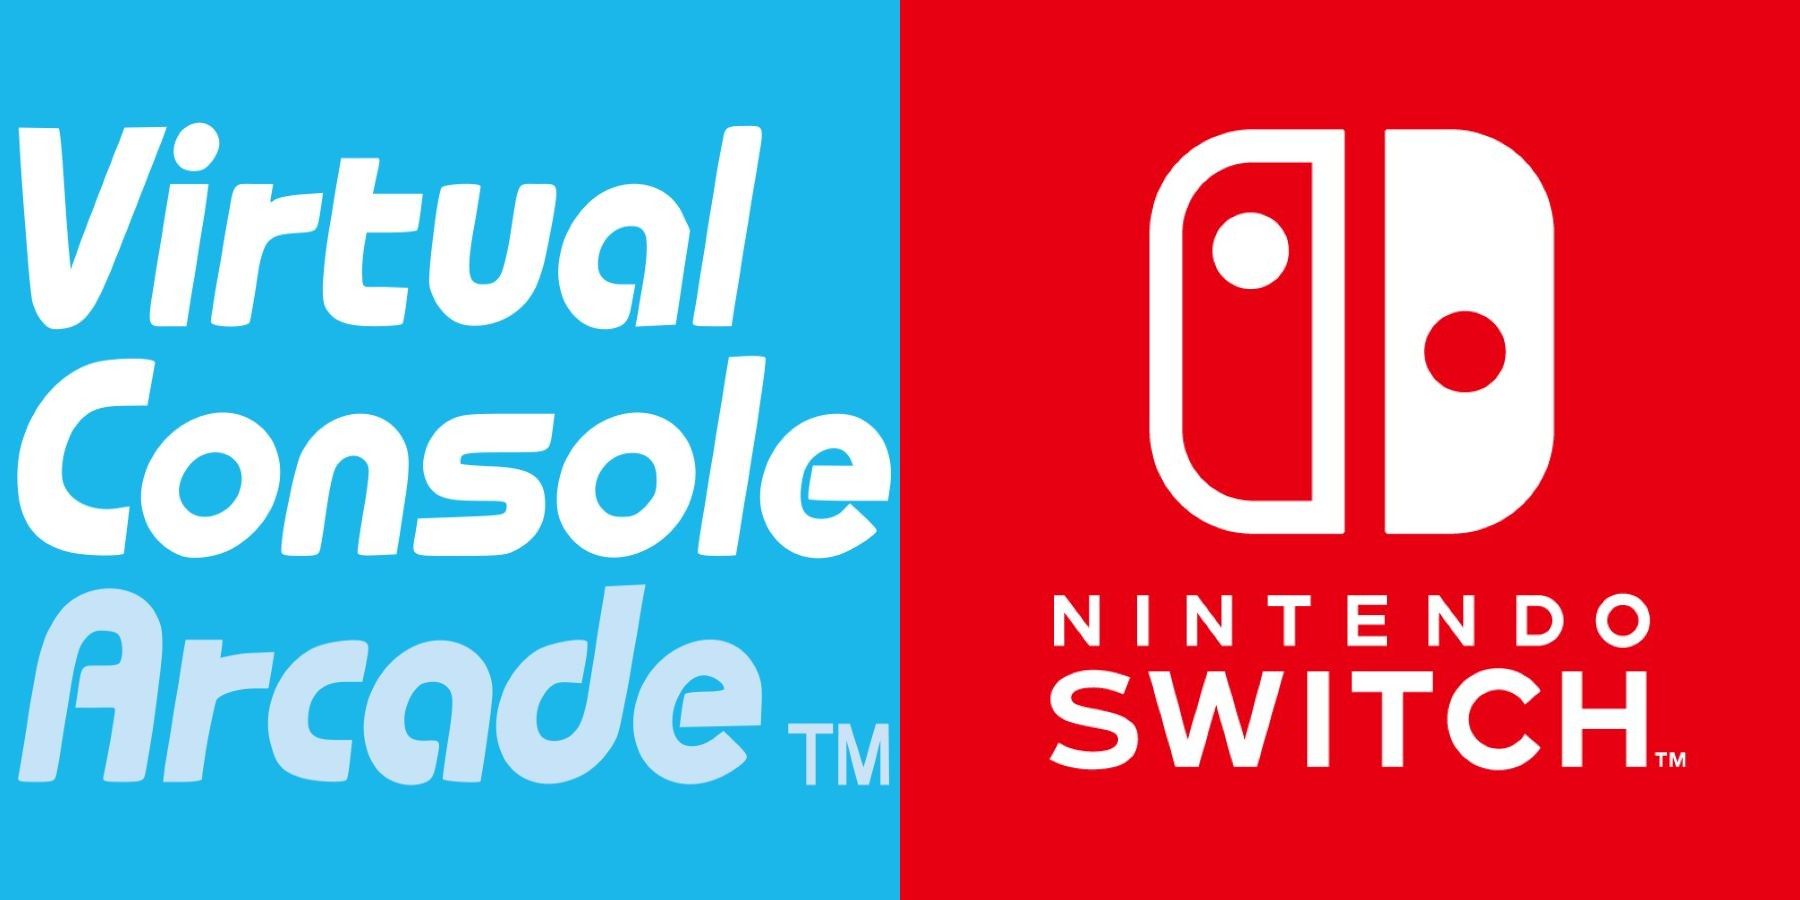 Логотип Virtual Console Arcade рядом с логотипом Nintendo Switch